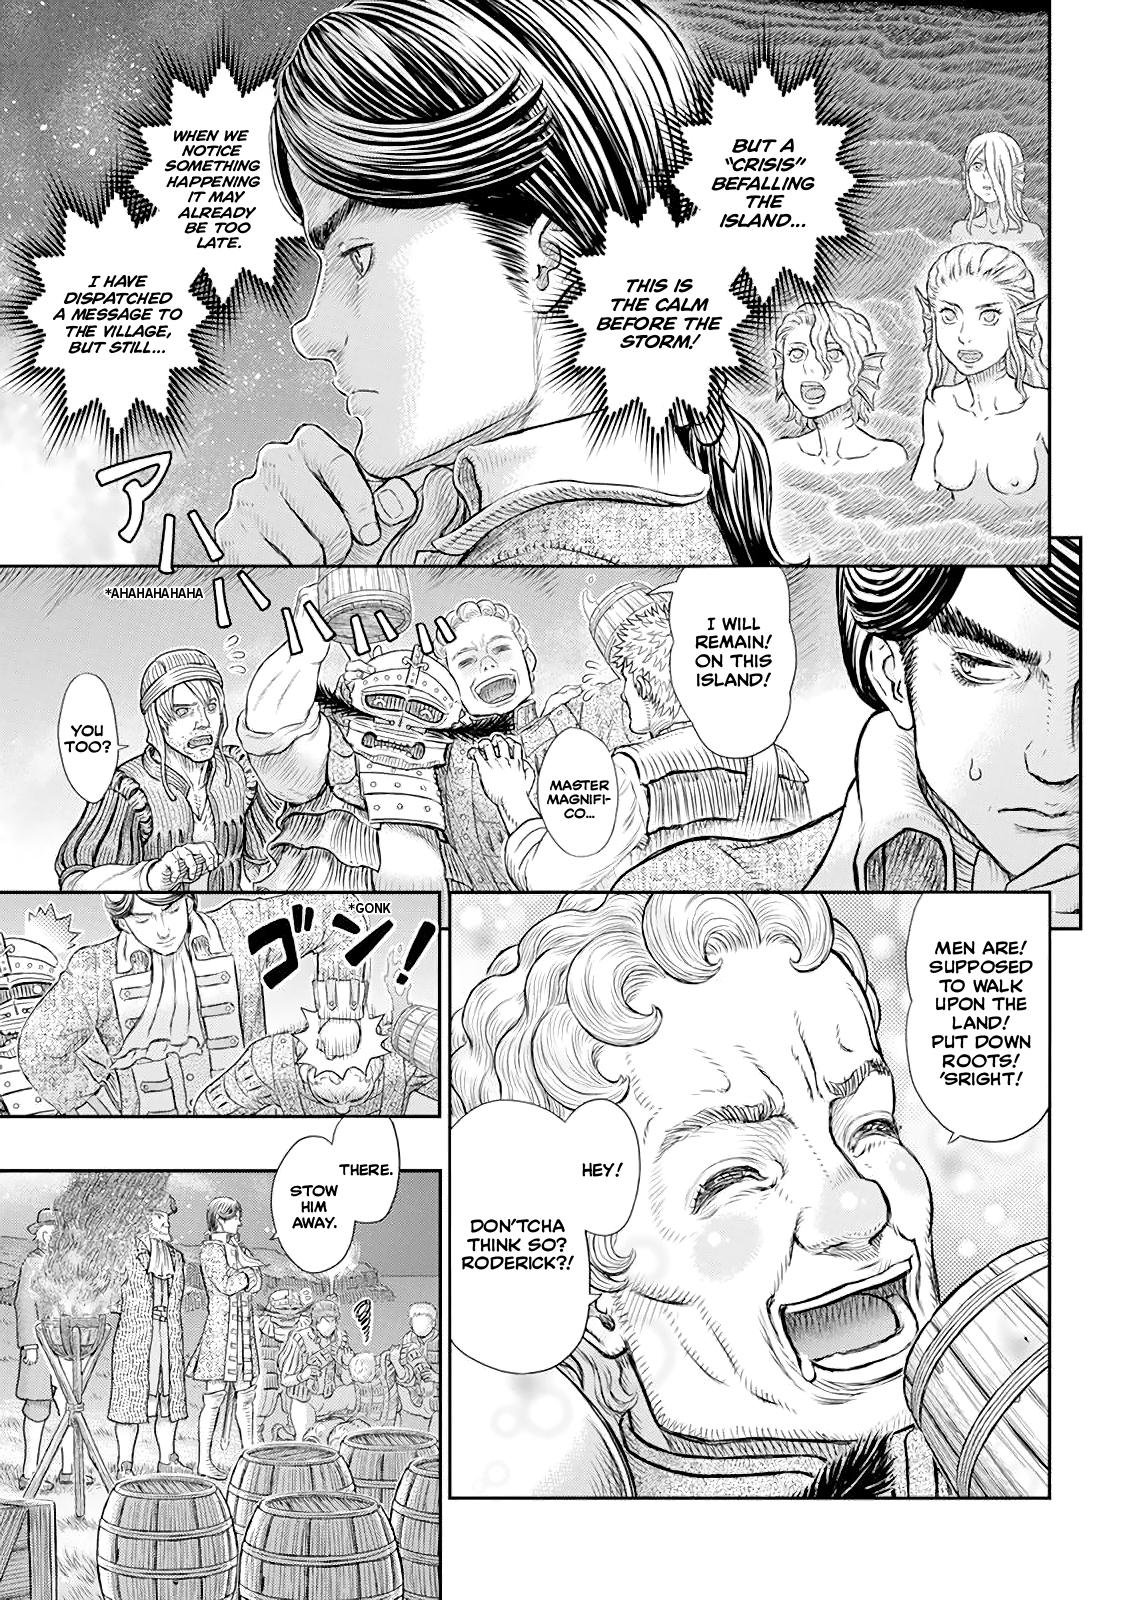 Berserk Manga Chapter 368 image 08